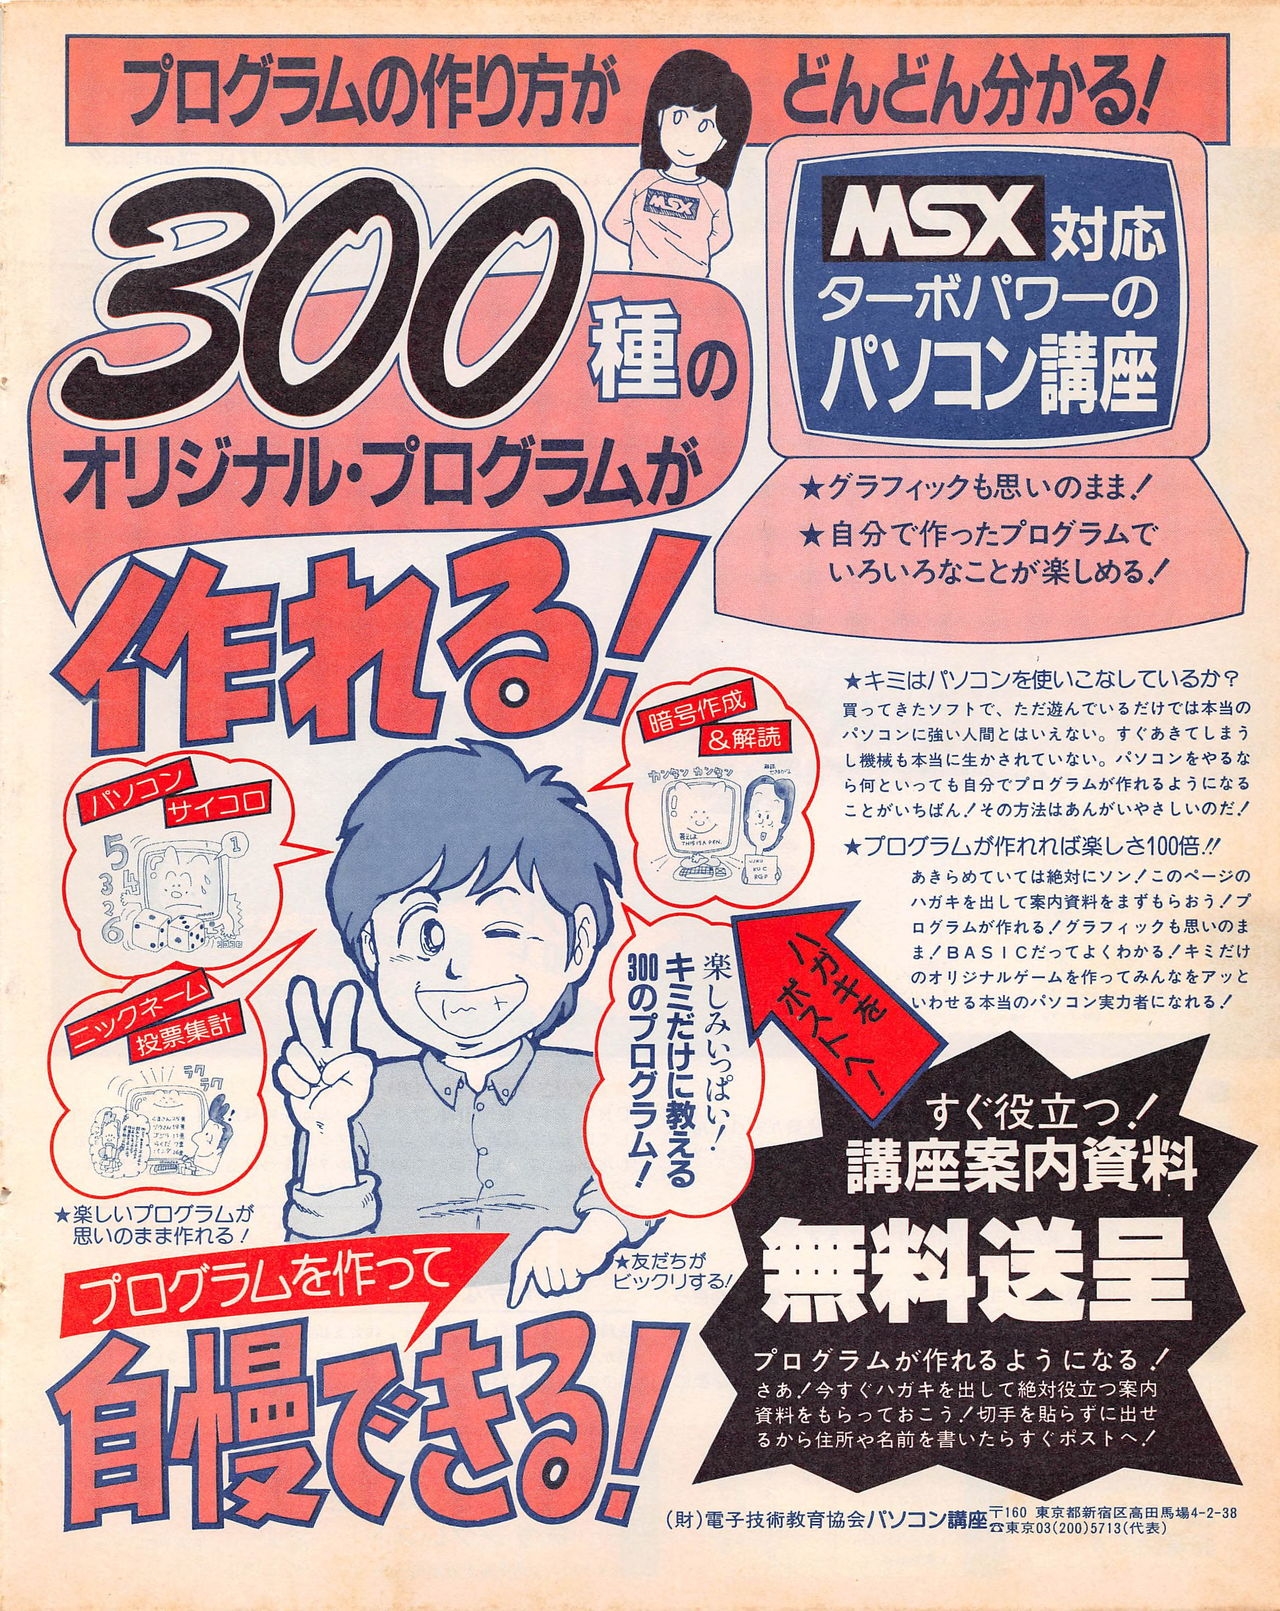 MSX Fan 1989-02 52